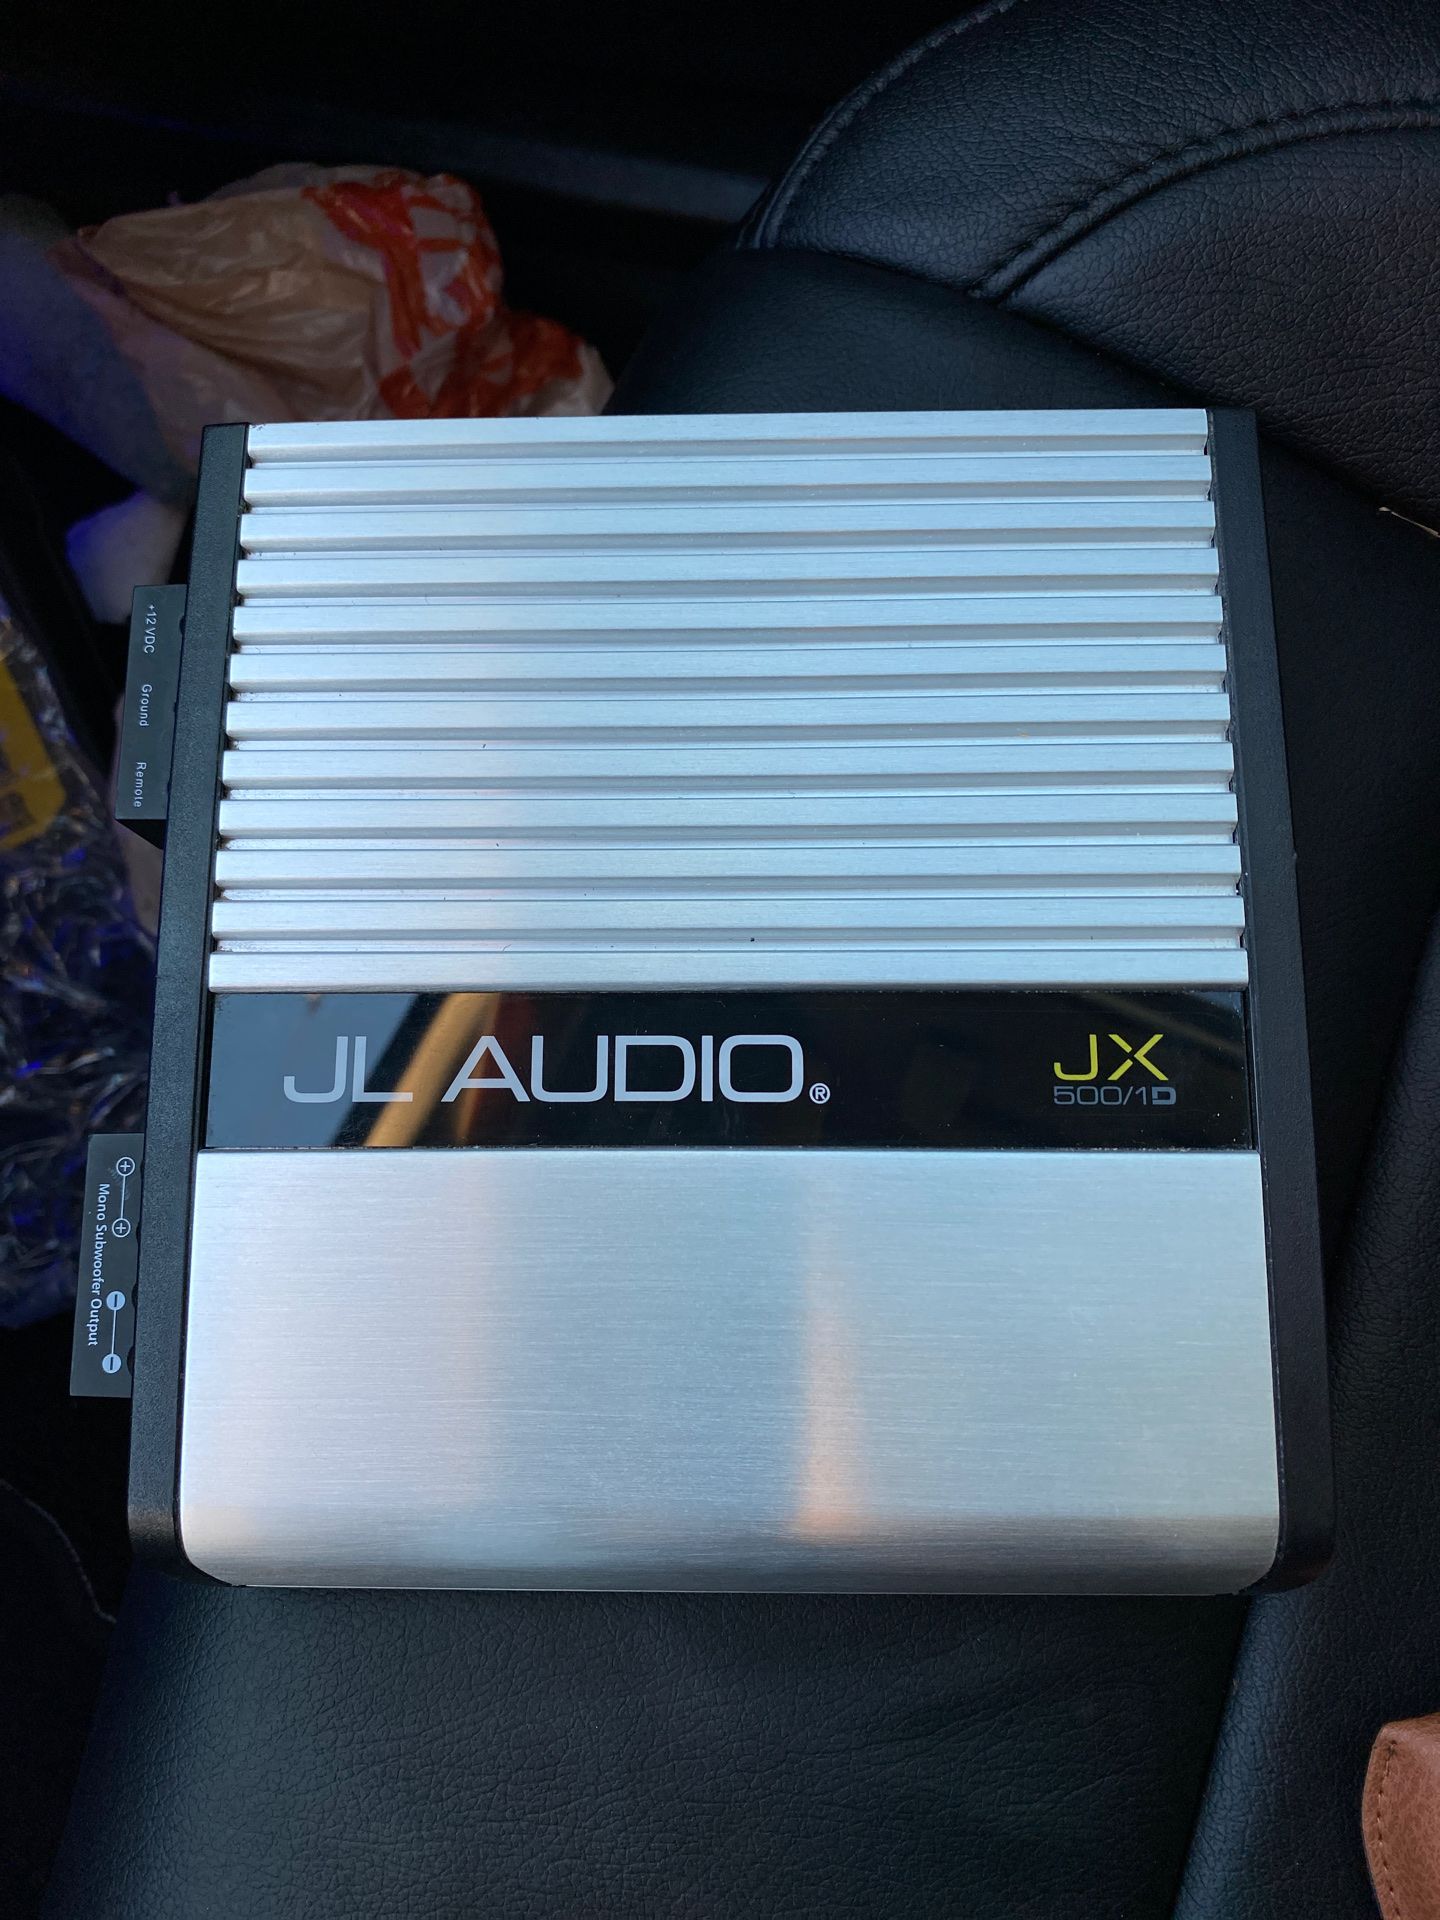 Jl audio jx500/1d